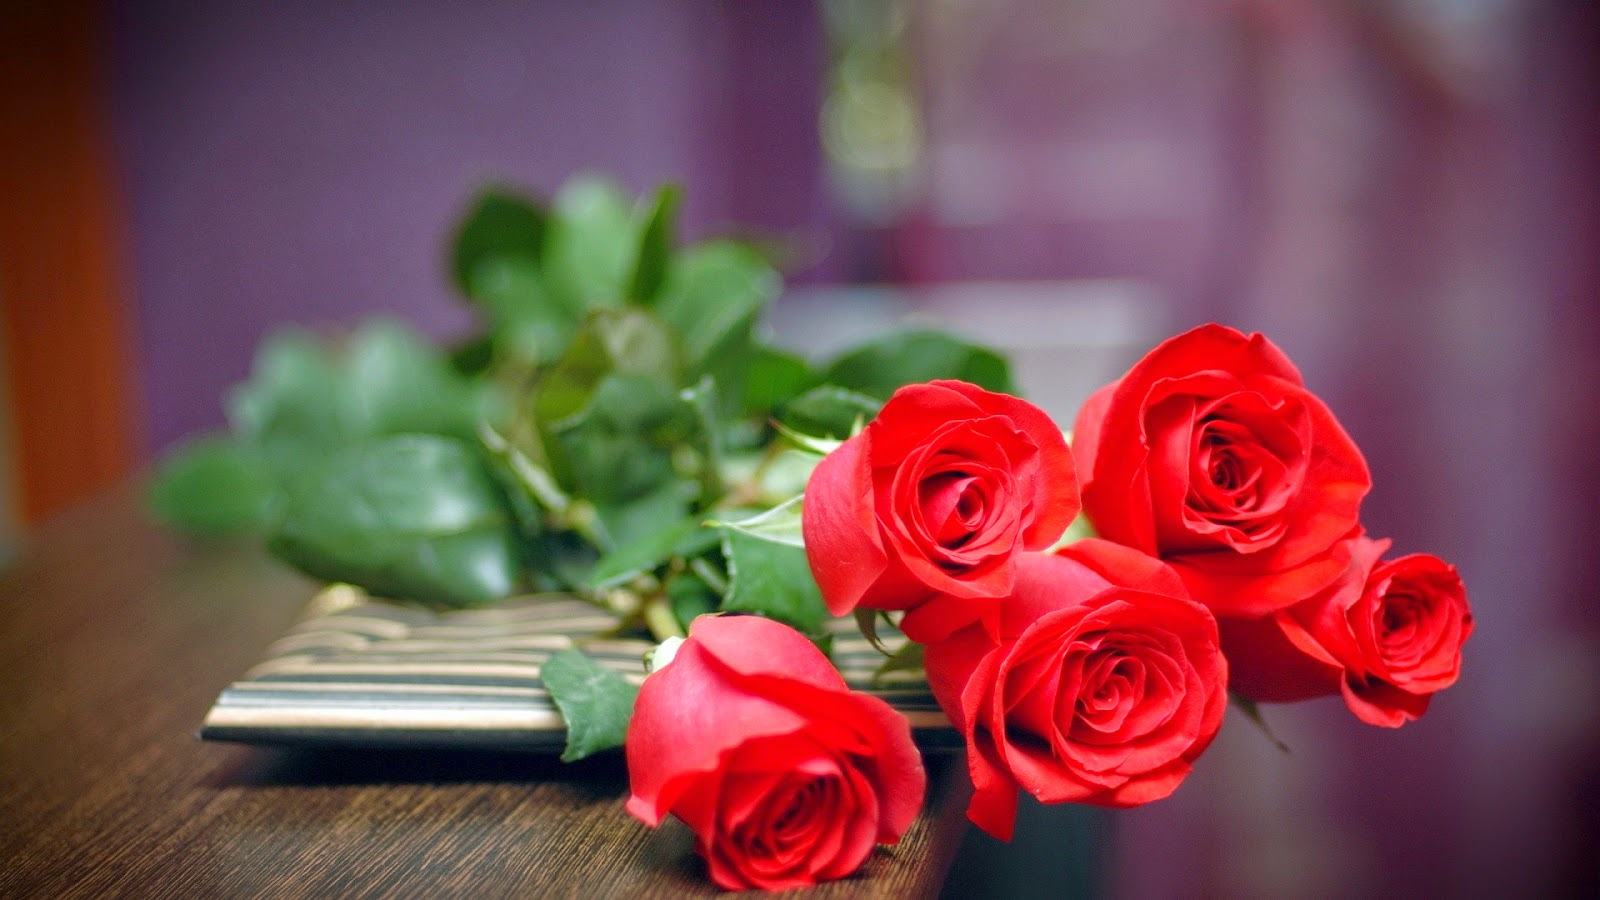 Trang trí hoa hồng đỏ trên bàn thờ dịp Tết